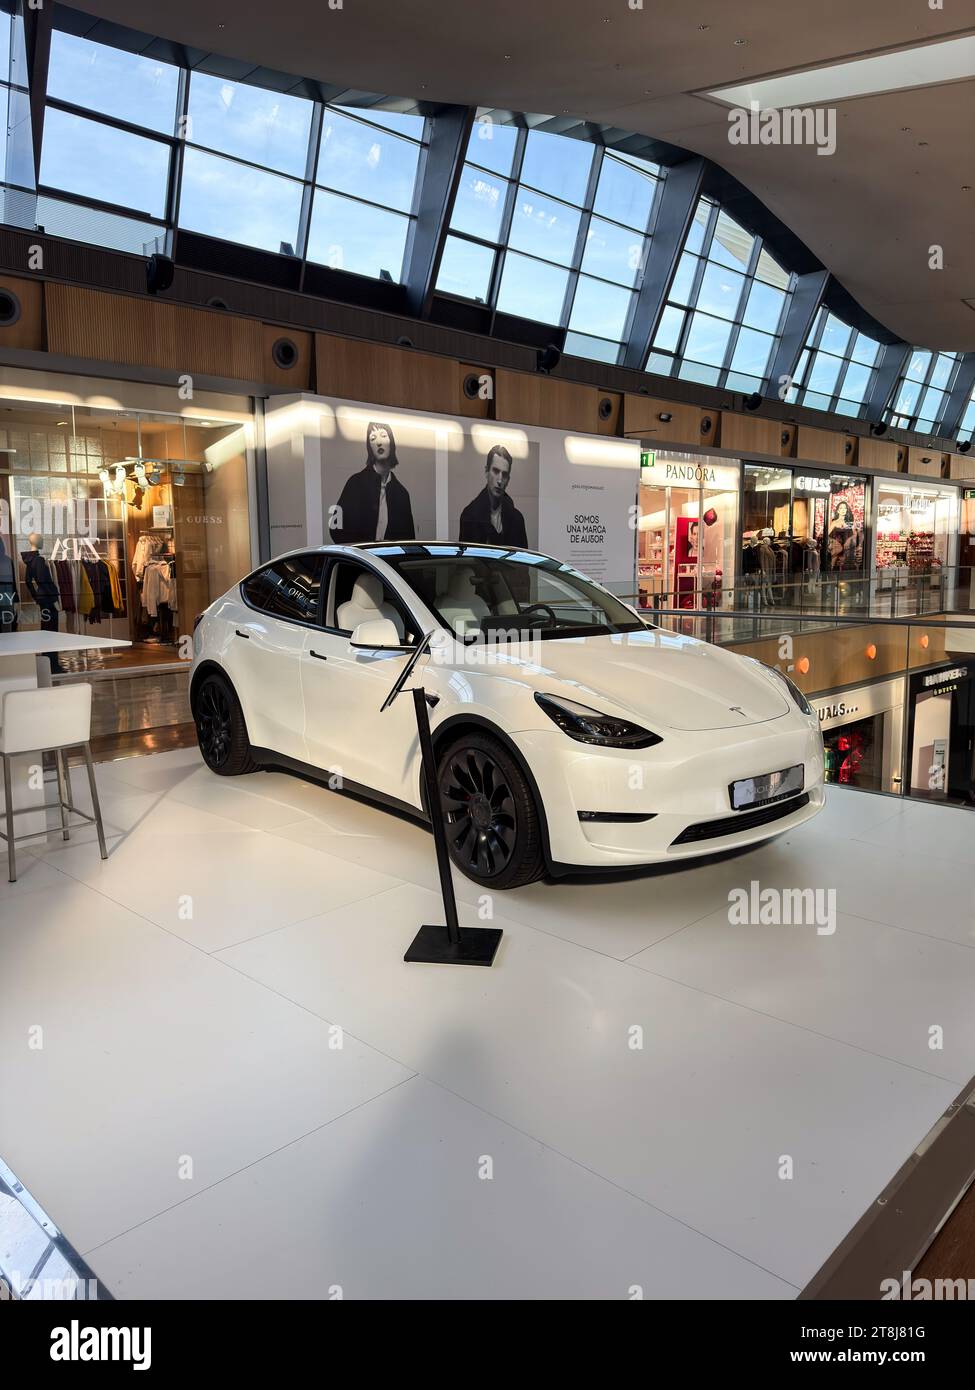 Tesla Model y a exposé à Puerto Venecia, un centre commercial reconnu basé dans la ville de Saragosse, en Espagne. Banque D'Images